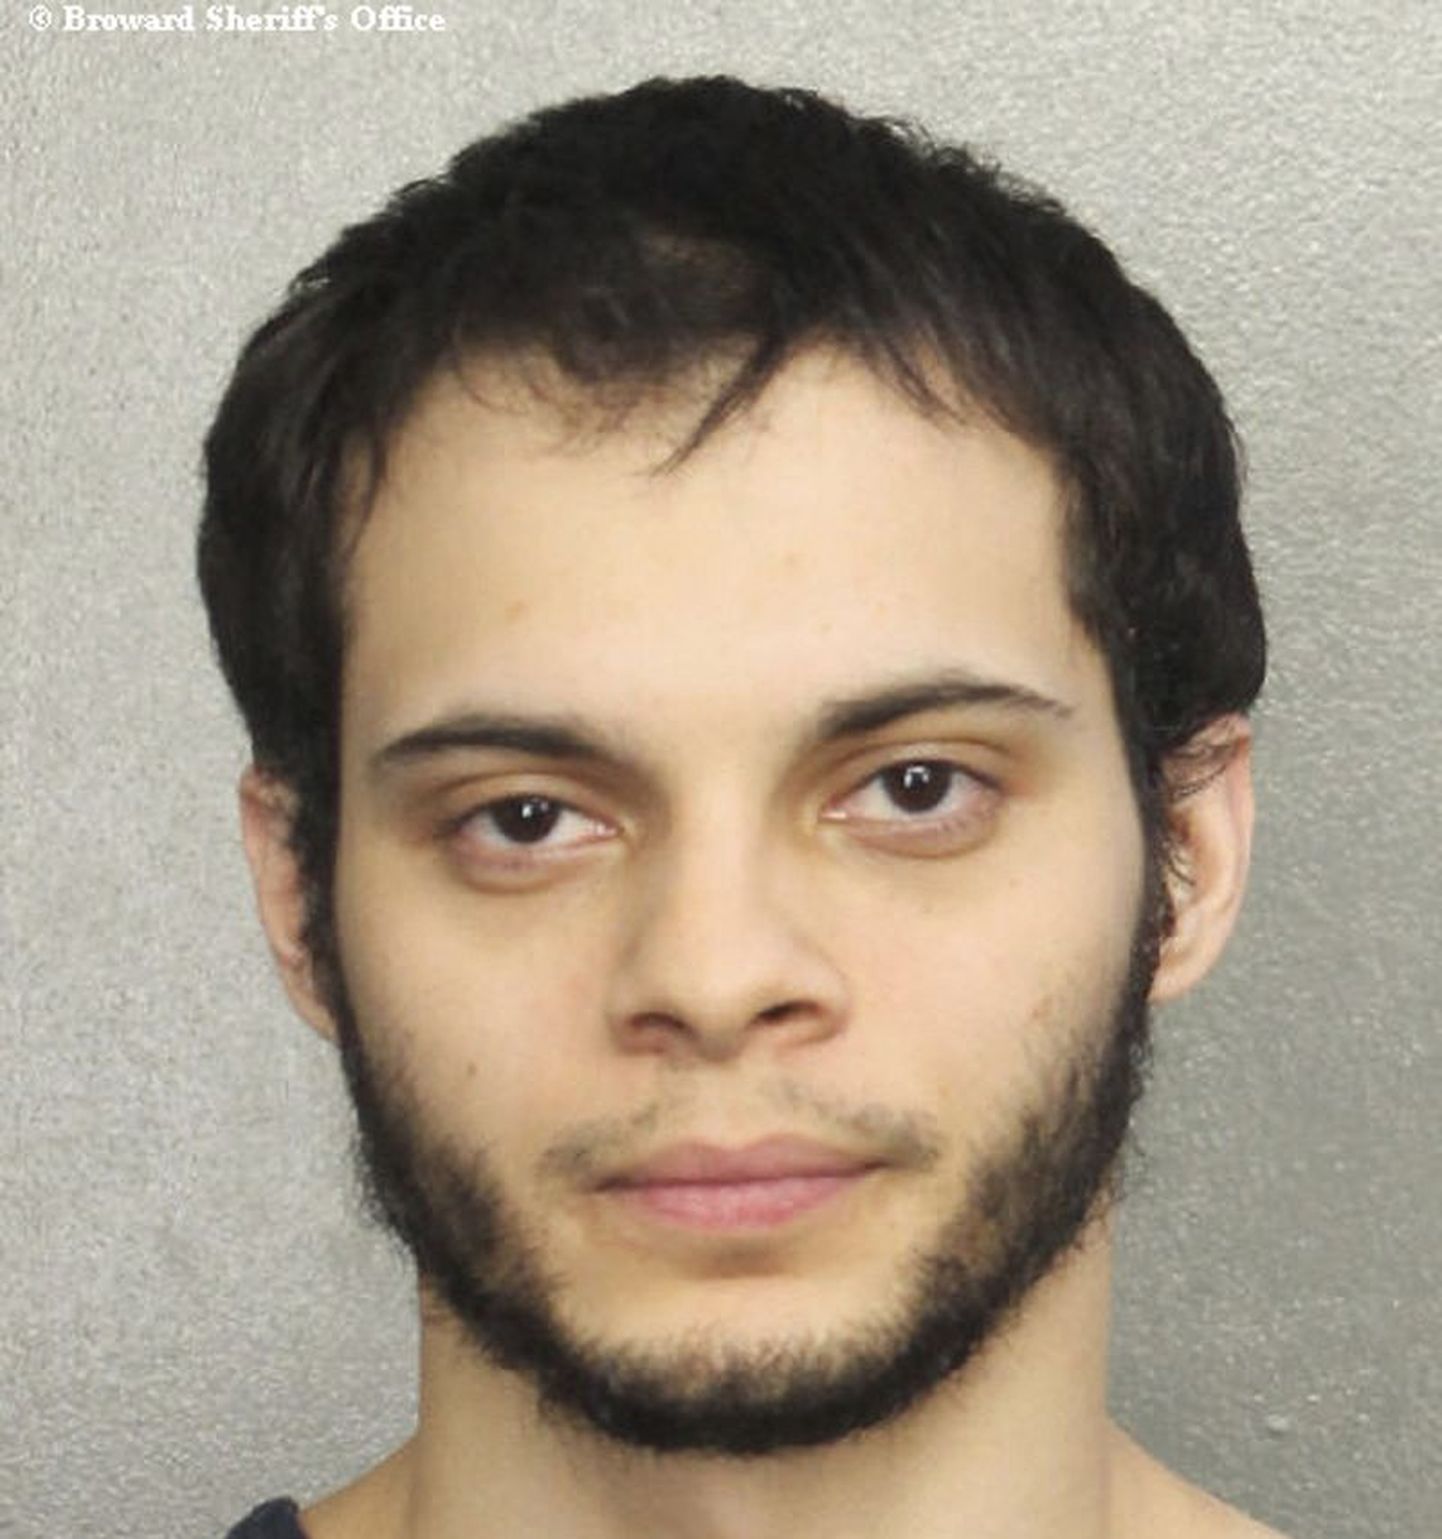 USA Fort Lauderdale'i lennujaamas viis inimest tapnud Esteban Santiago.